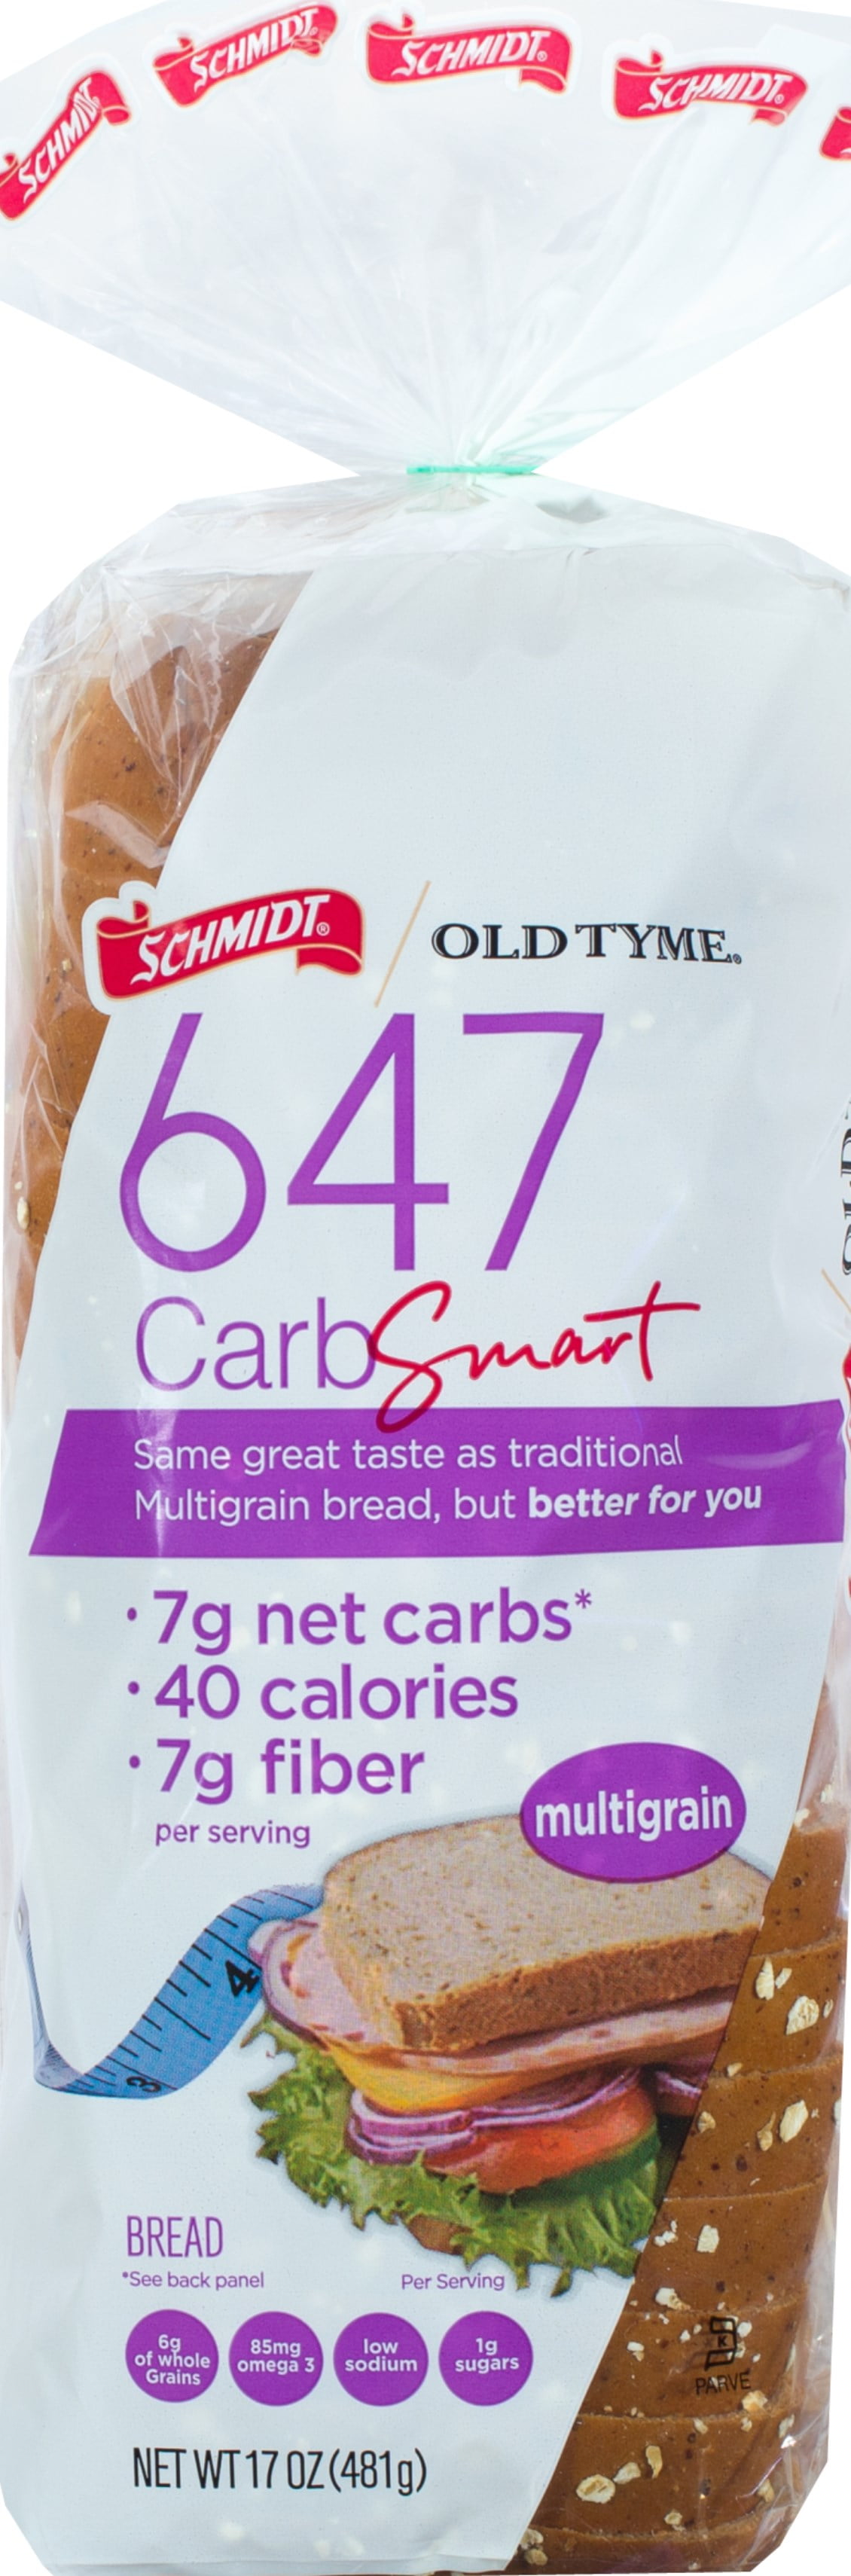 Schmidt Old Tyme 647 Carb Smart Multigrain Bread Loaf 17 Oz 18 Count 